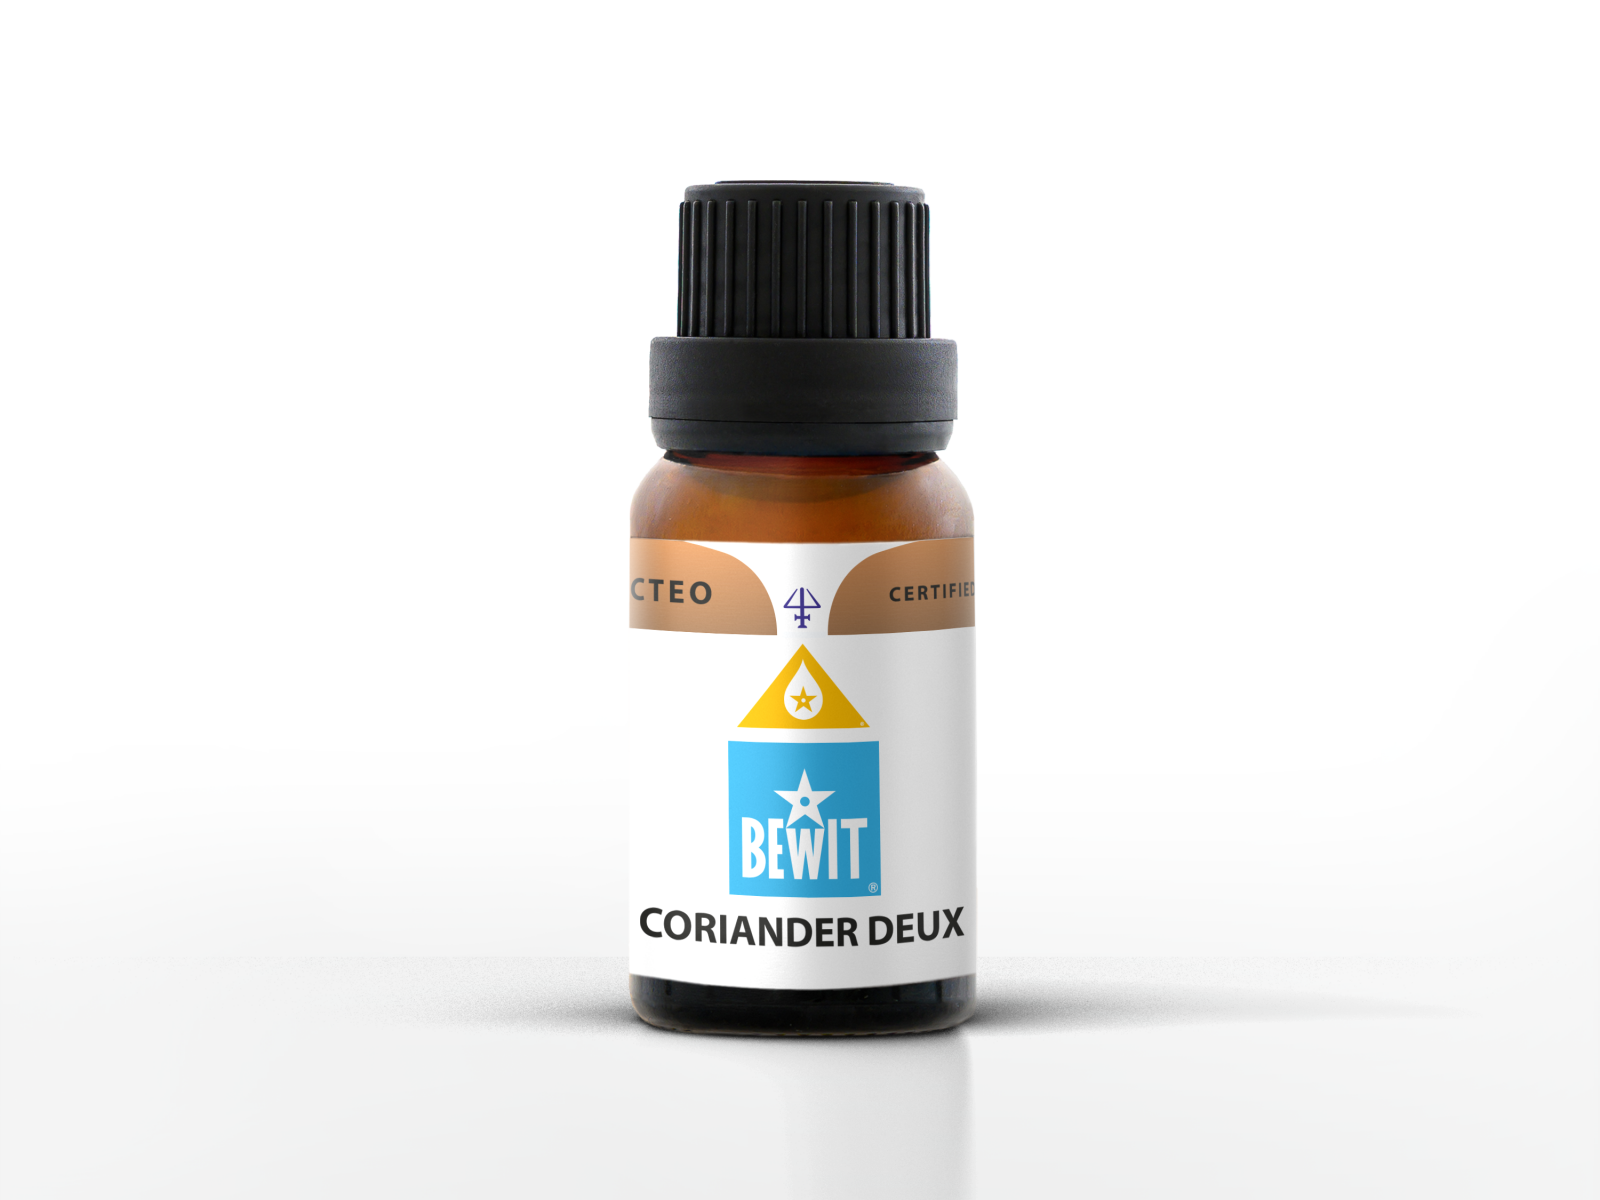 BEWIT CORIANDER DEUX - Blend of essential oils